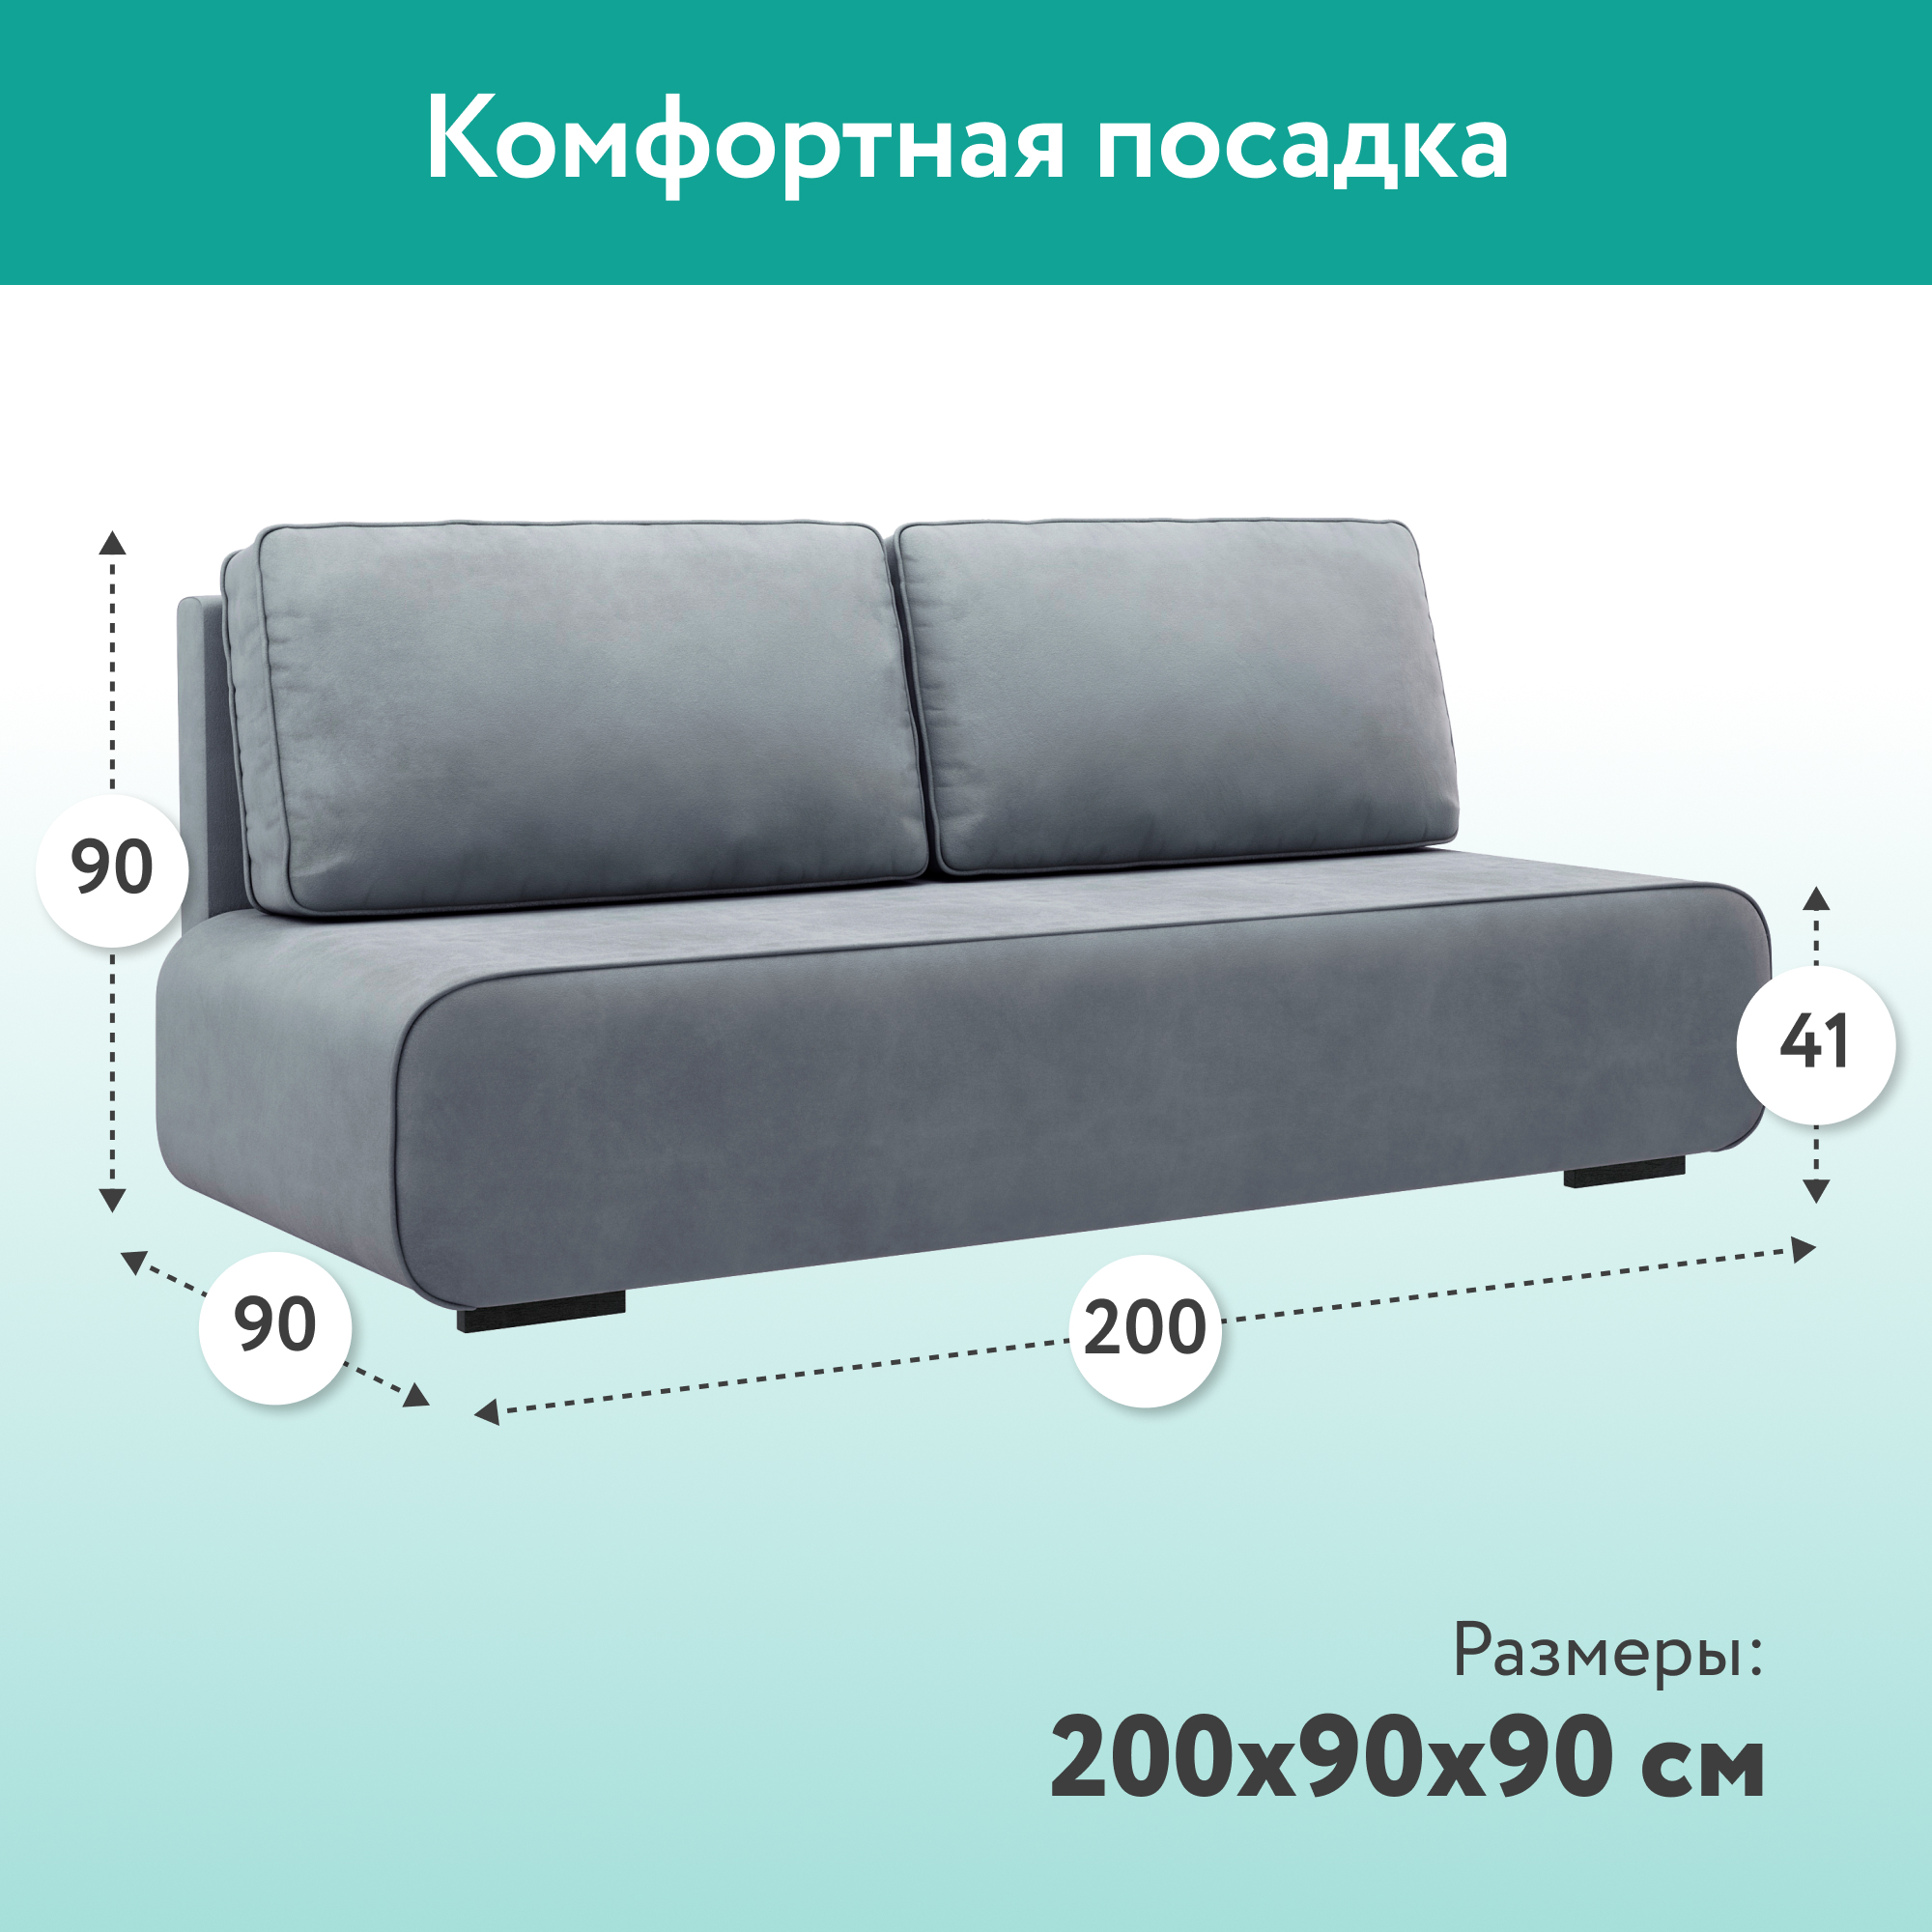 Диван-кровать «Лаки» Серый, Велюр велюр серый купить от 24990 руб. винтернет-магазине Фабрики PUSHE в Москве